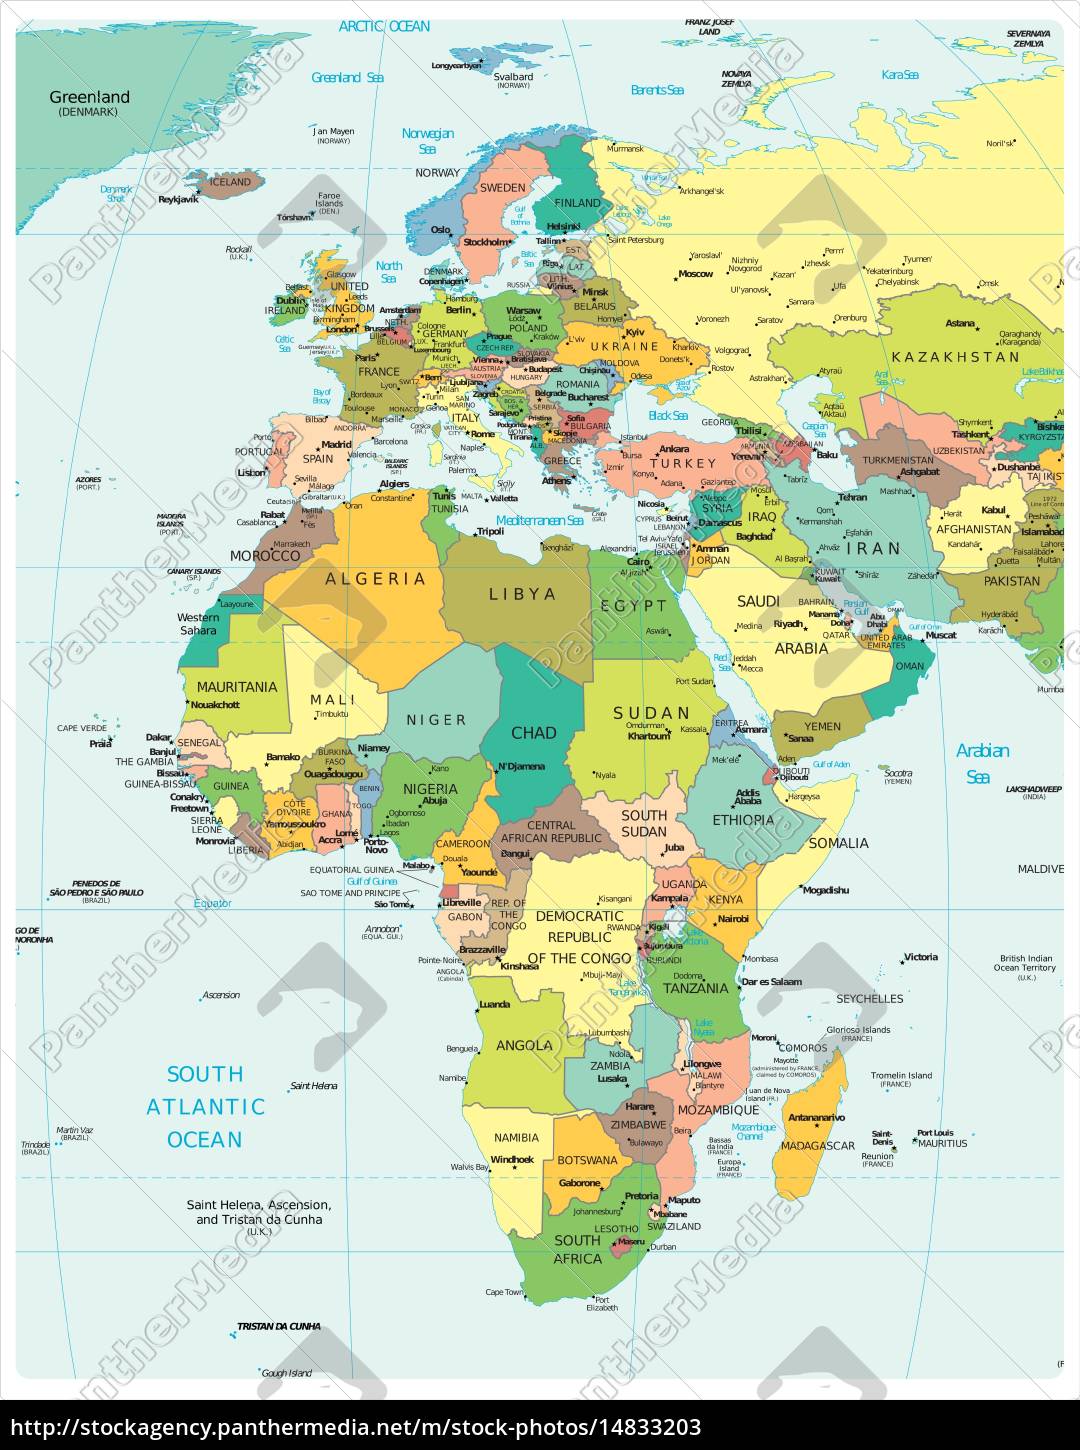 afrika und europa region karte - Stockfoto - #14833203 | Bildagentur